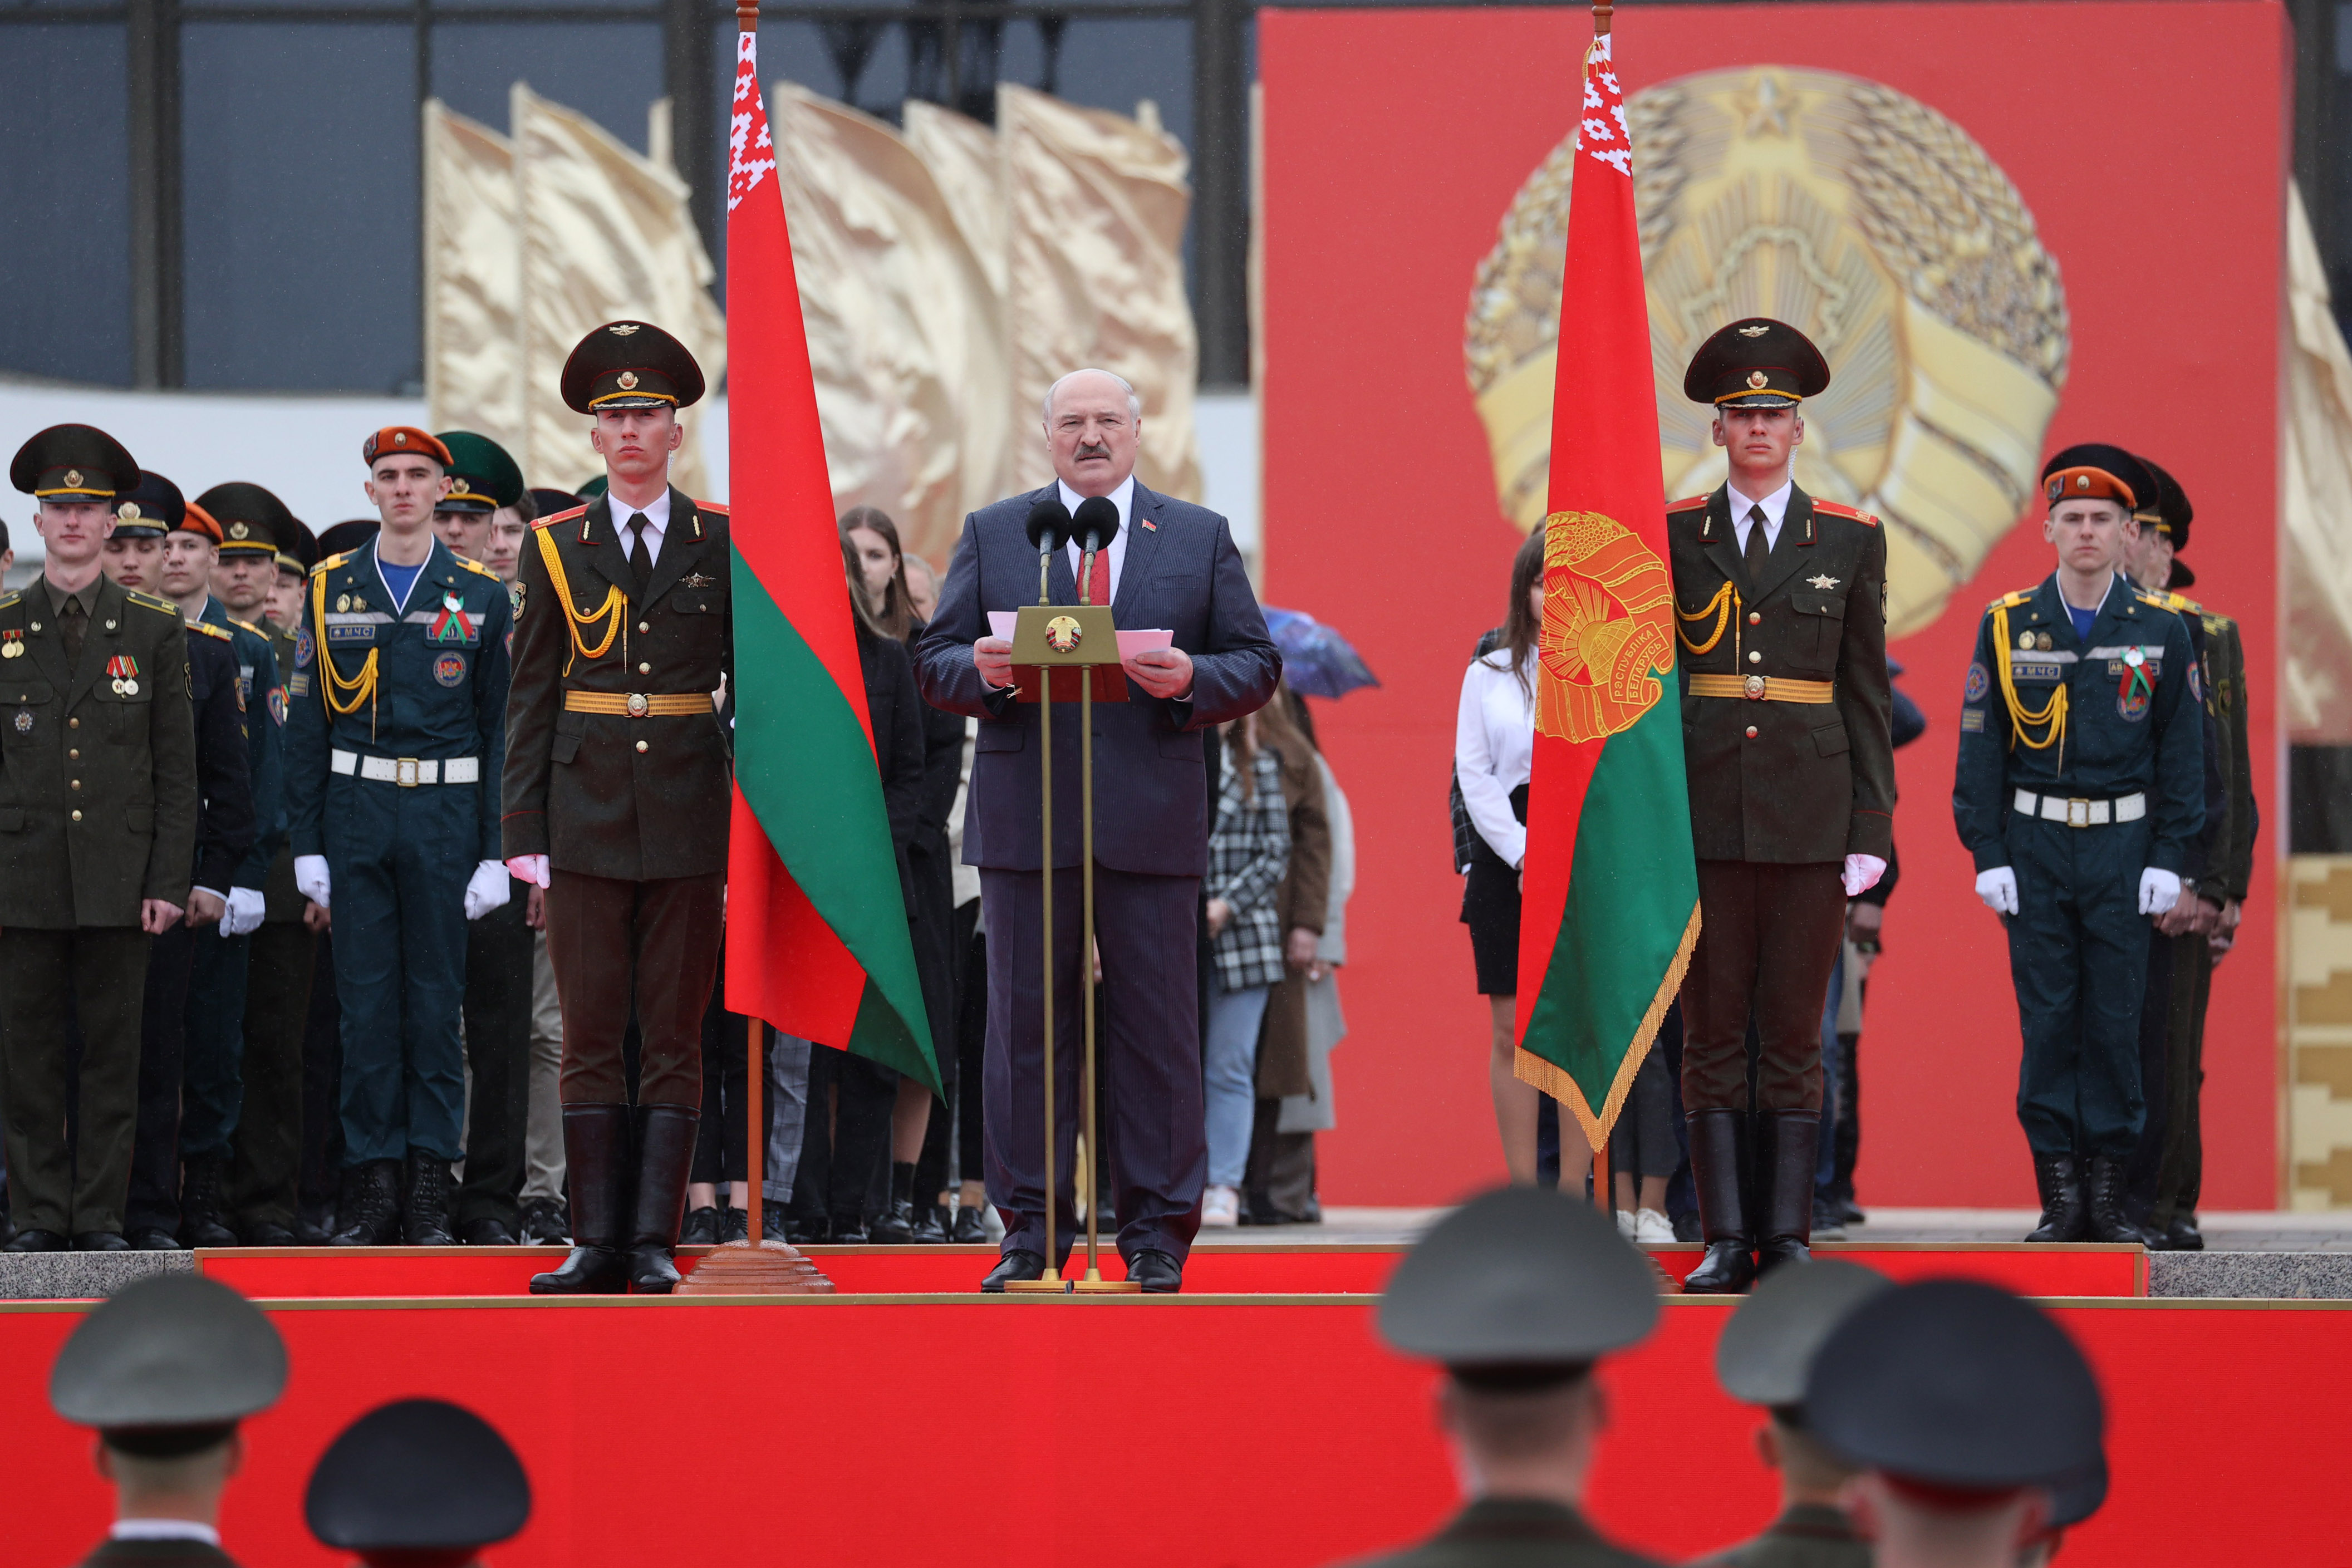 Александр Лукашенко: гордимся своими символами и отечественной историей, смотрим в будущее, помня об истоках 